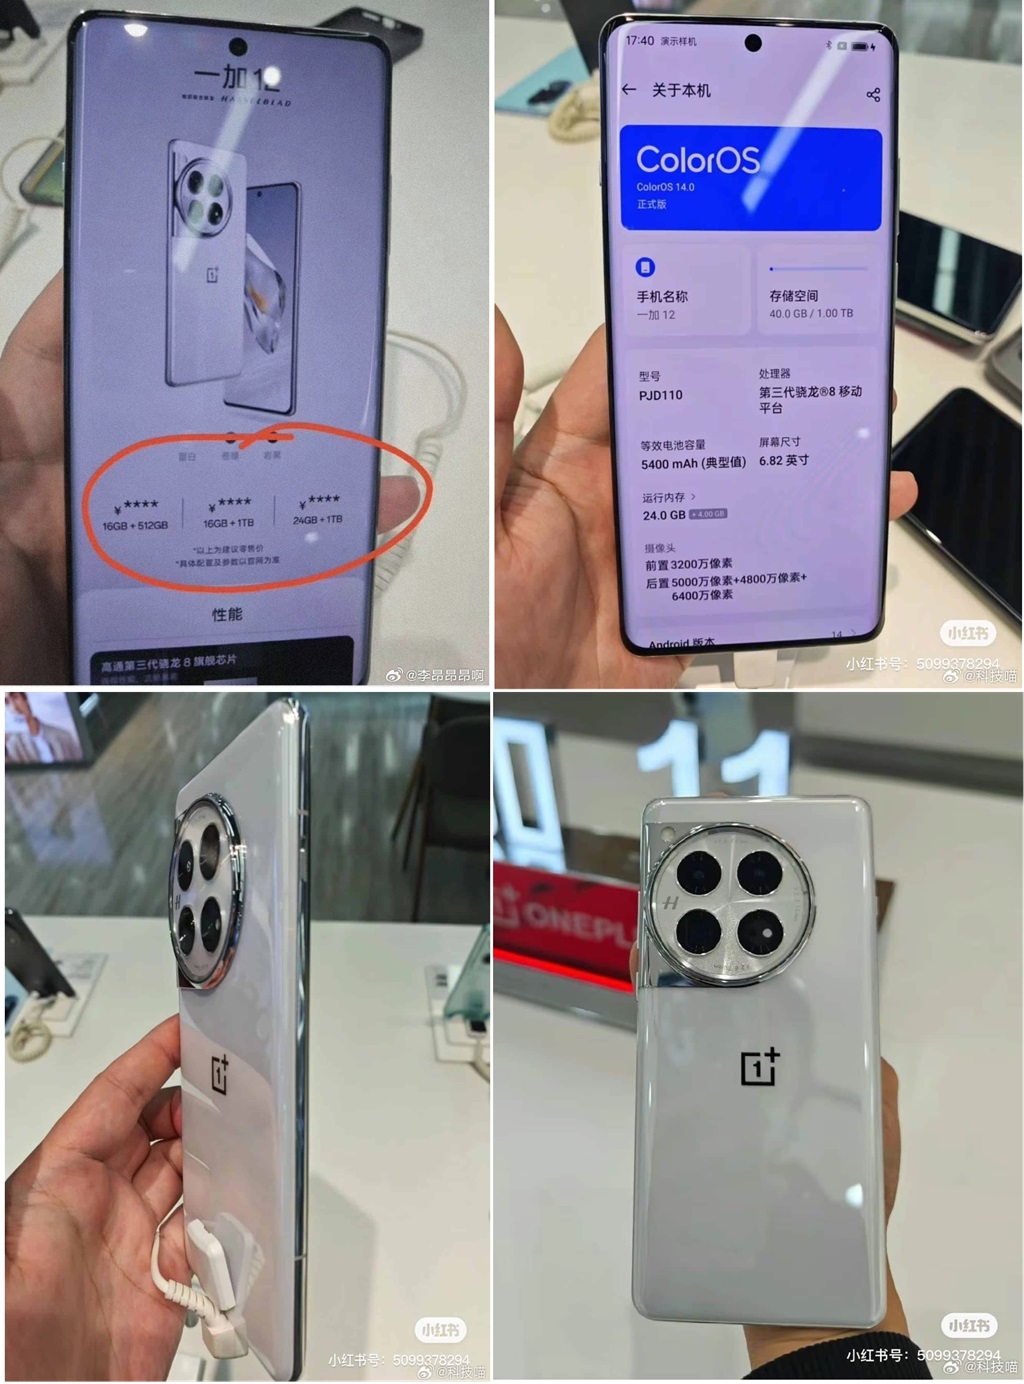 OnePlus-12-5G.jpg